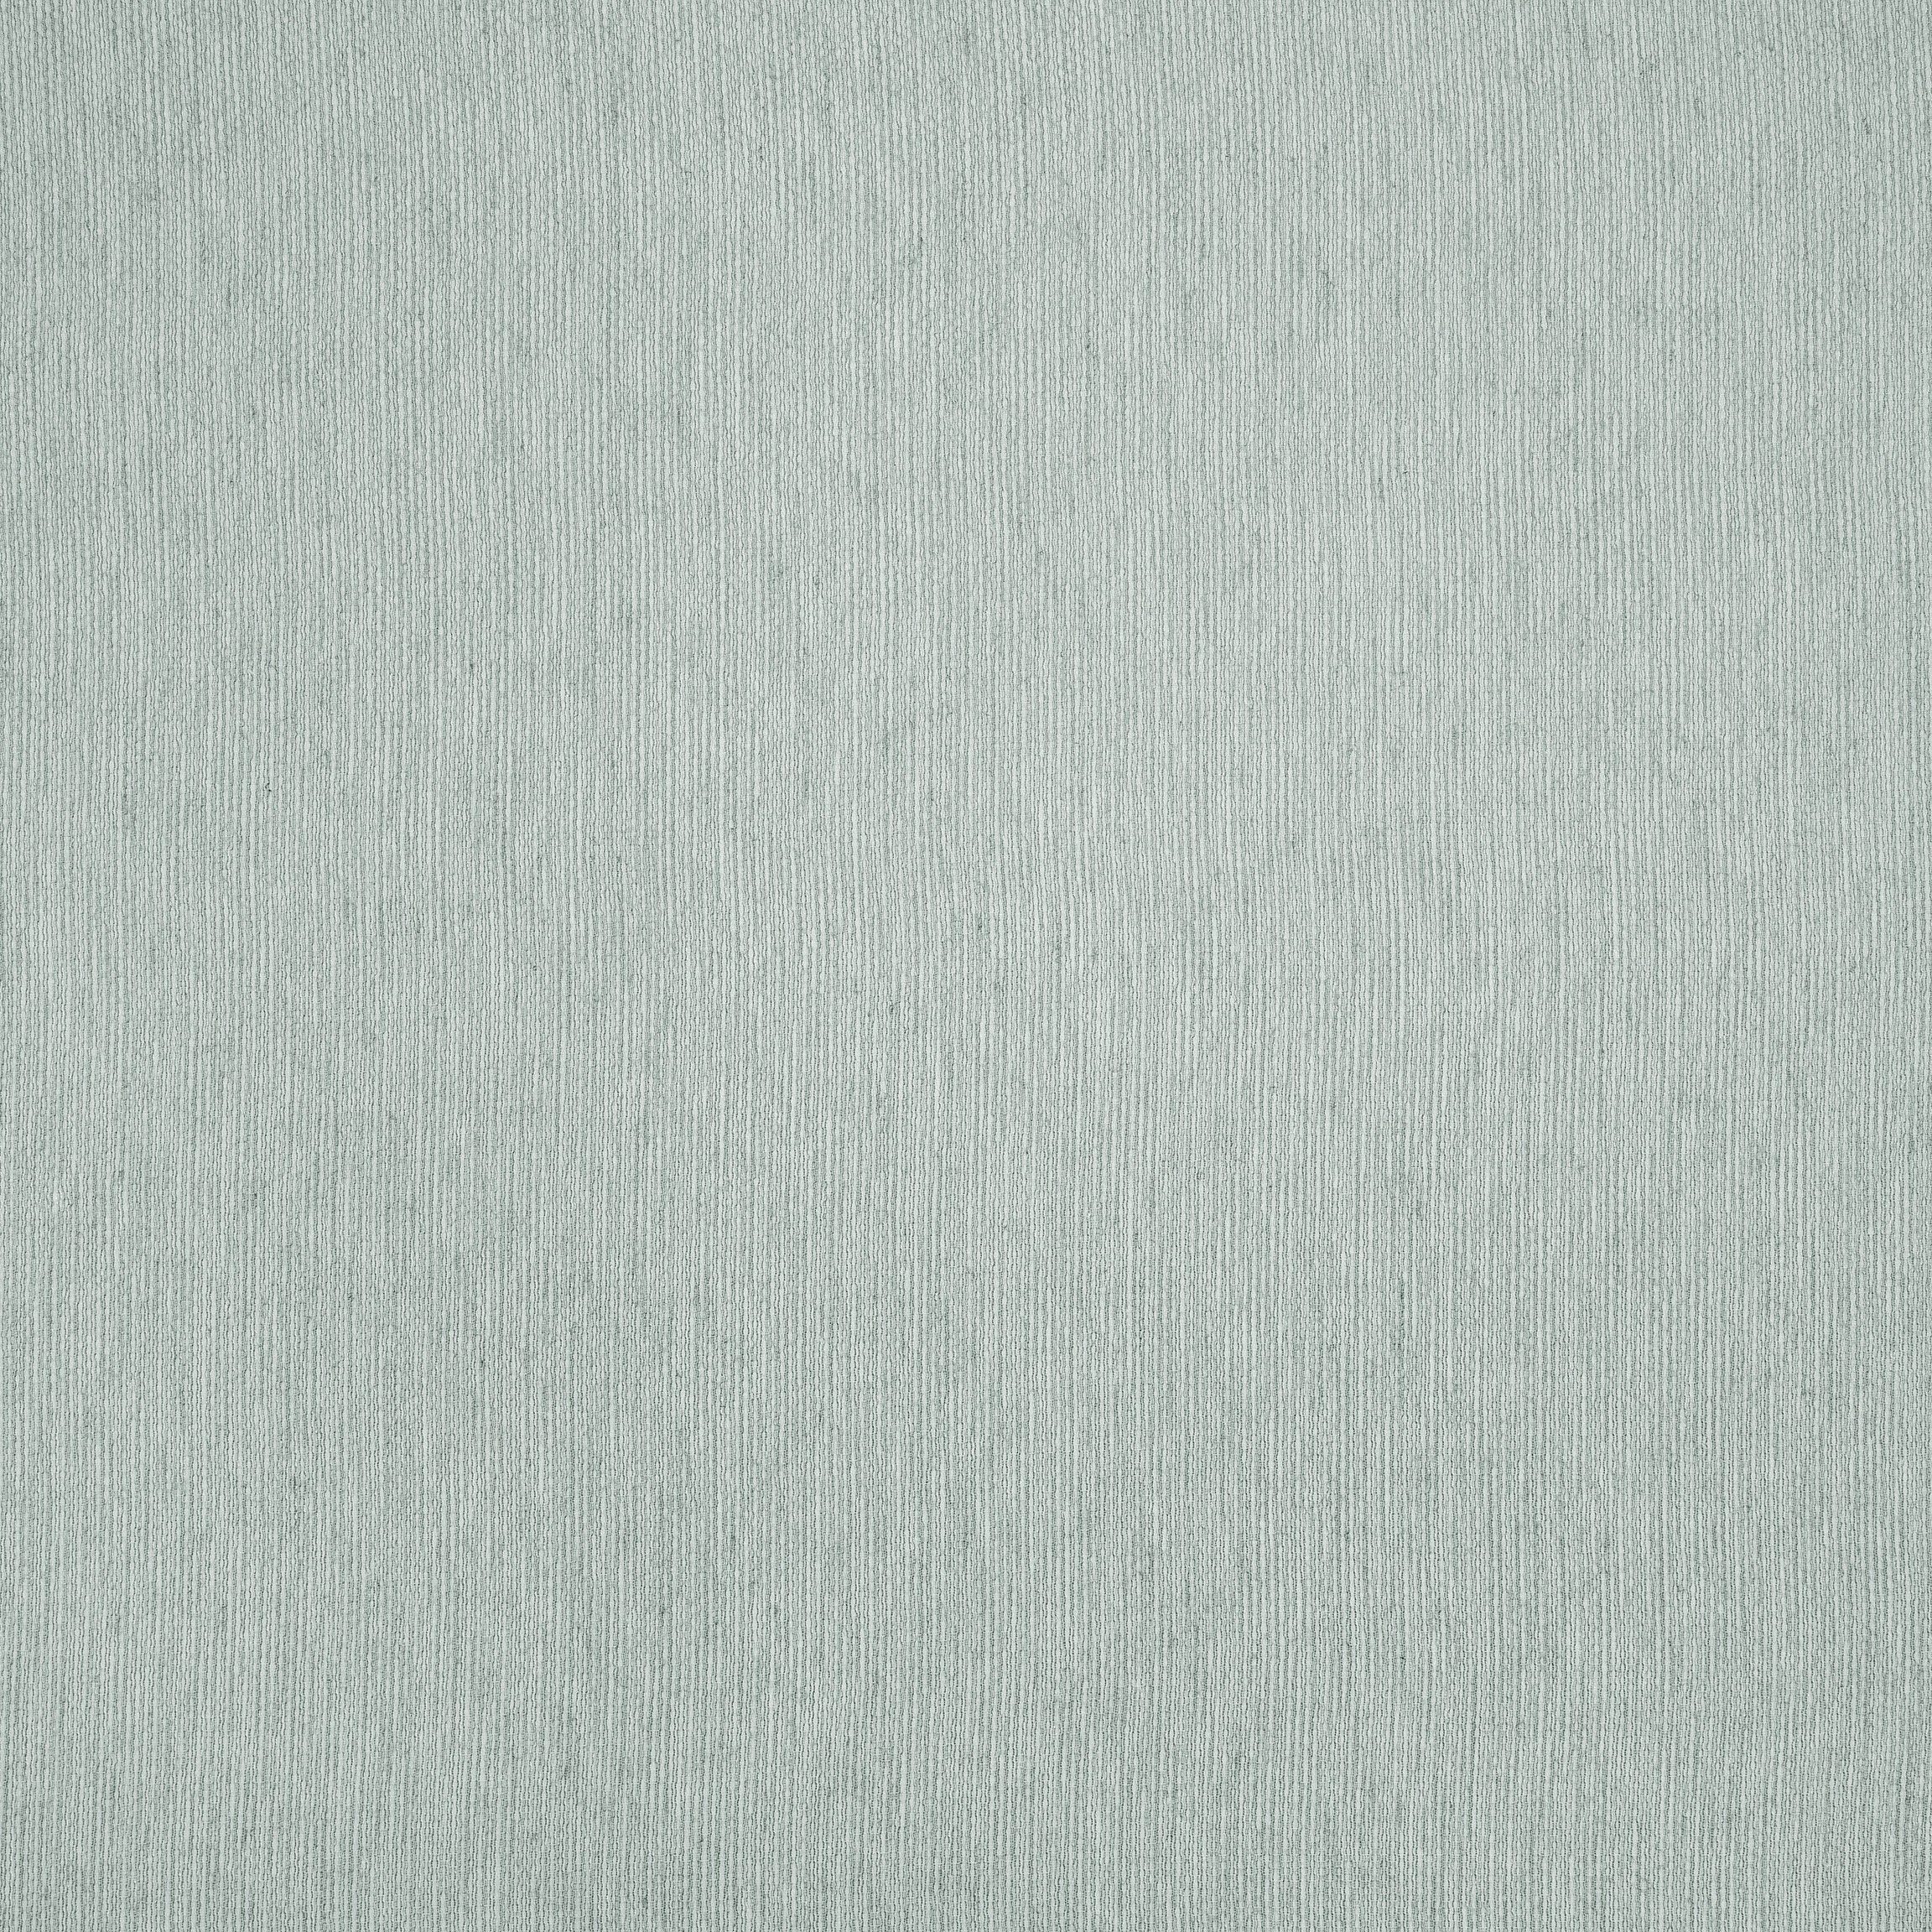  Тюль LIBRA AZUR, ширина 300 см  - Фото